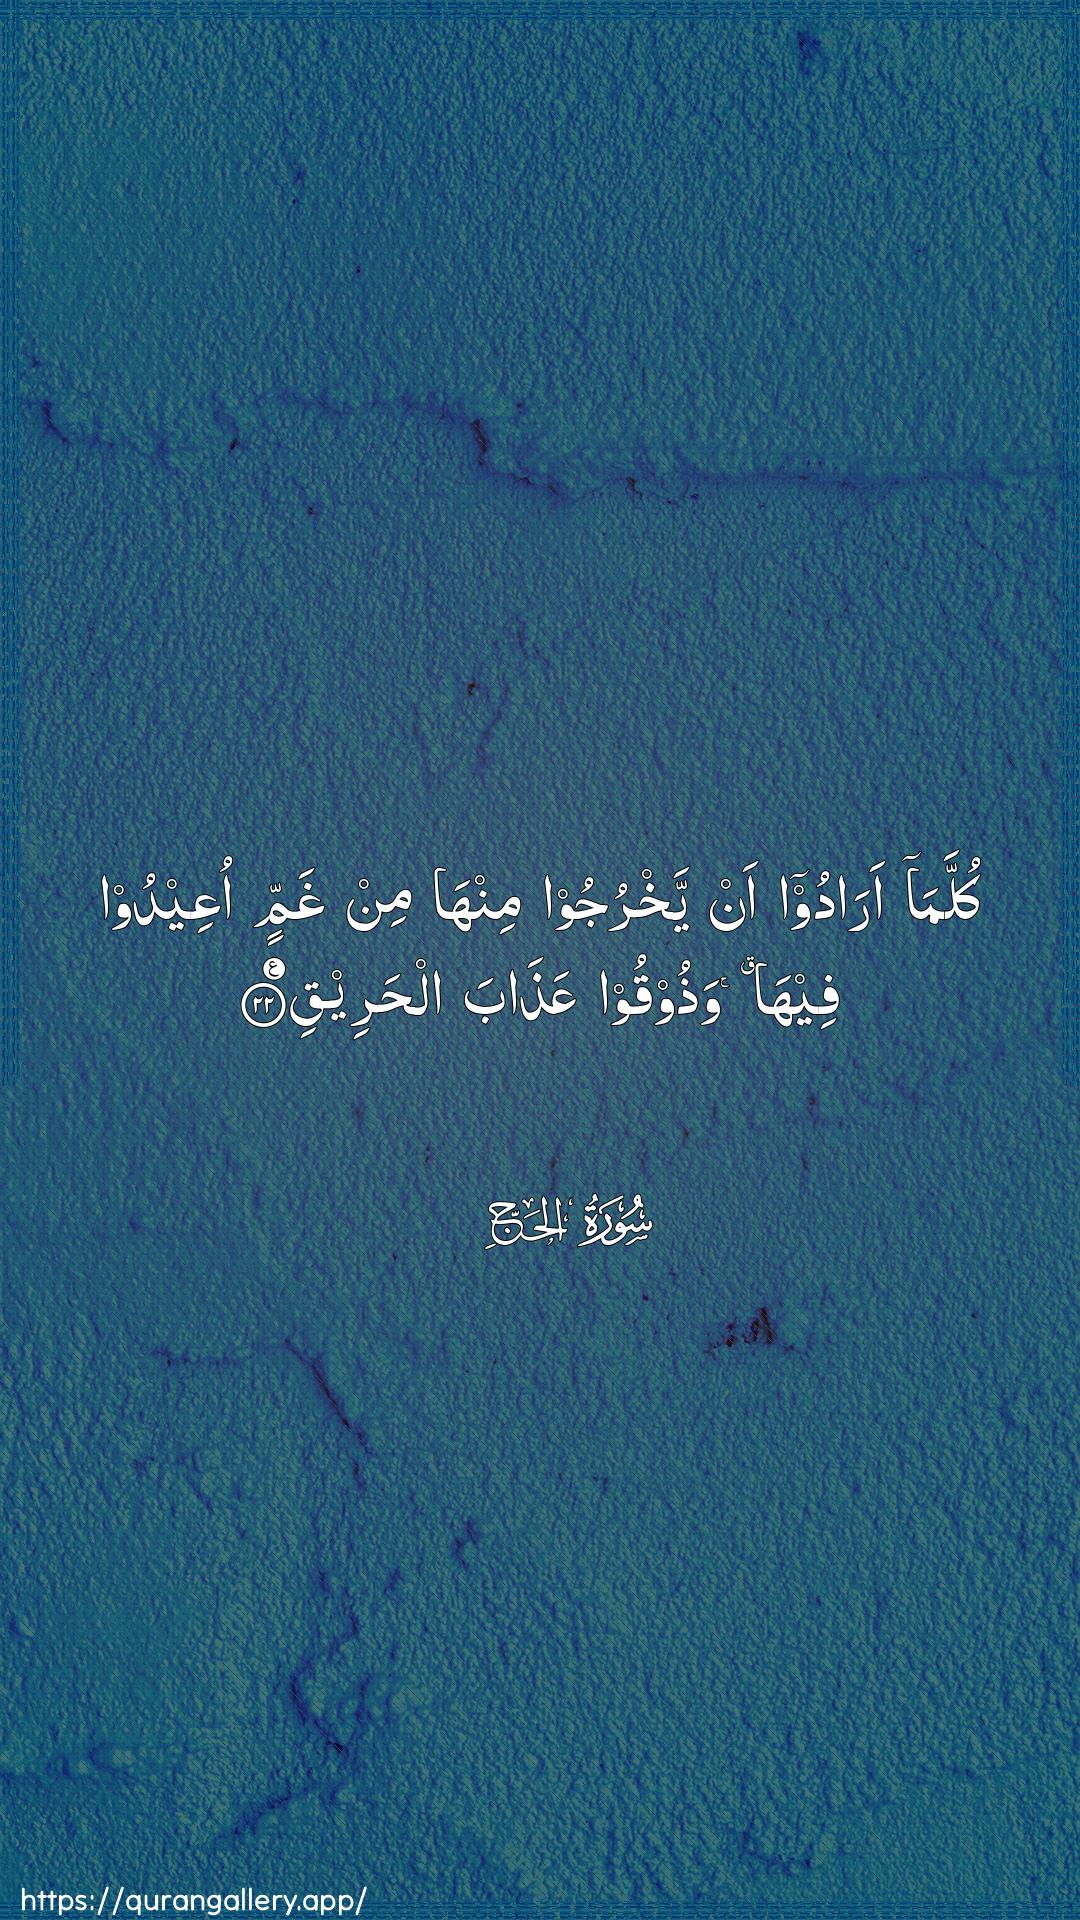 Surah Al-Hajj Ayah 22 of 22 HD Wallpaper: Download Beautiful vertical Quran Verse Image | Kullama aradoo an yakhrujoominha min ghammin oAAeedoo feeha wathooqooAAathaba alhareeq